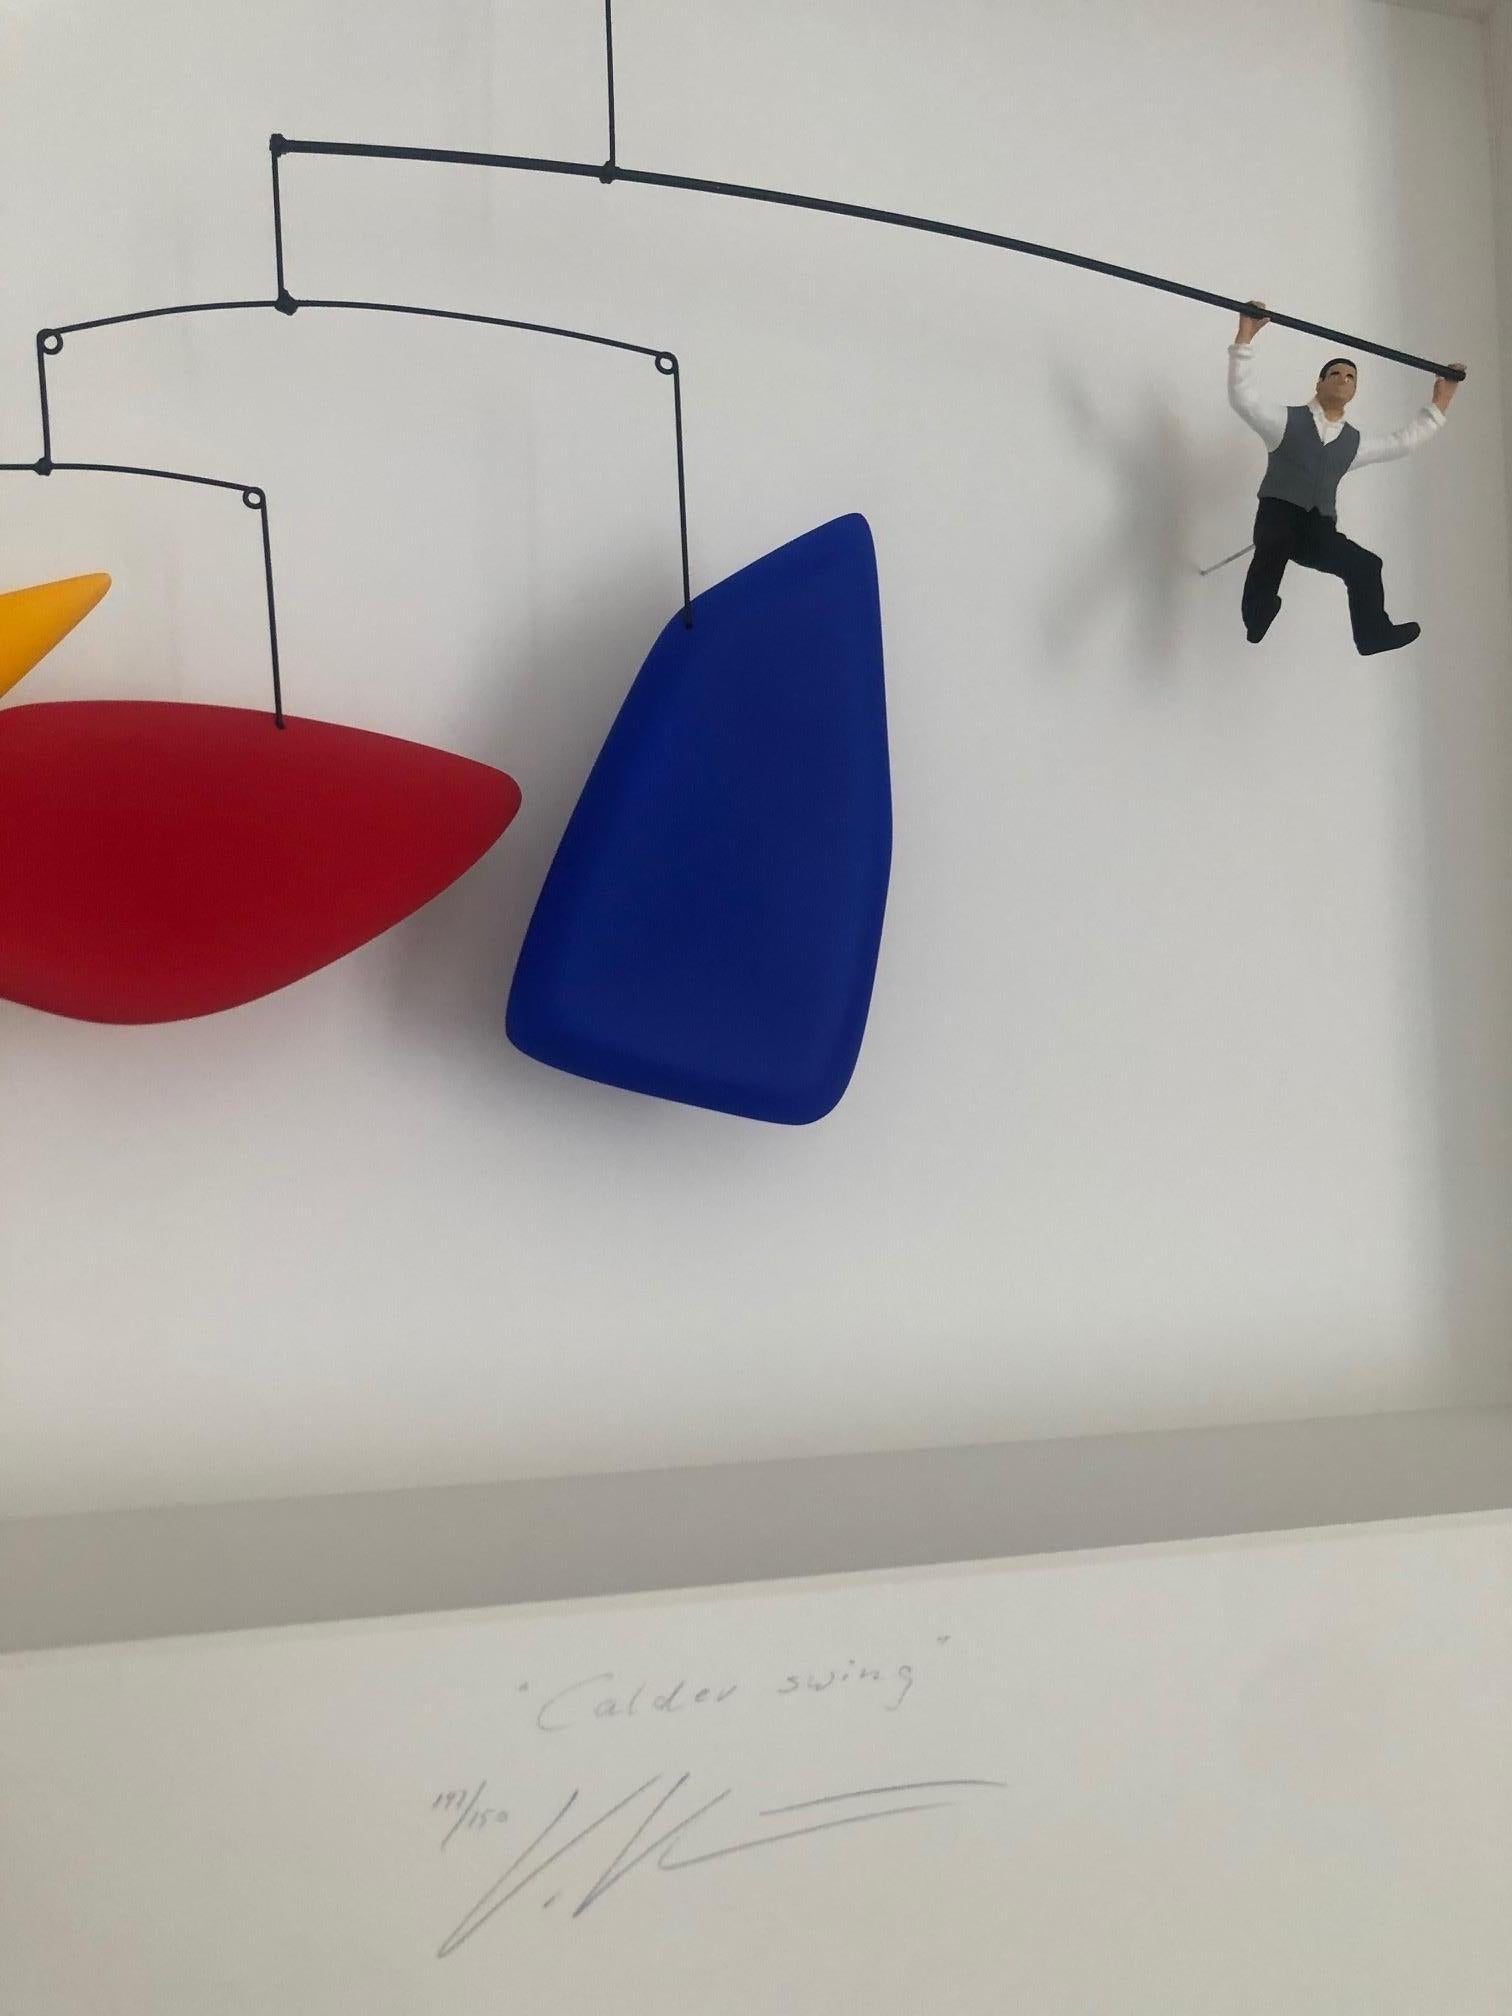 Hommage an Calder - zeitgenössisches Kunstwerk, Design-Hommage an Alexander Calder  (Assemblage), Mixed Media Art, von Volker Kuhn